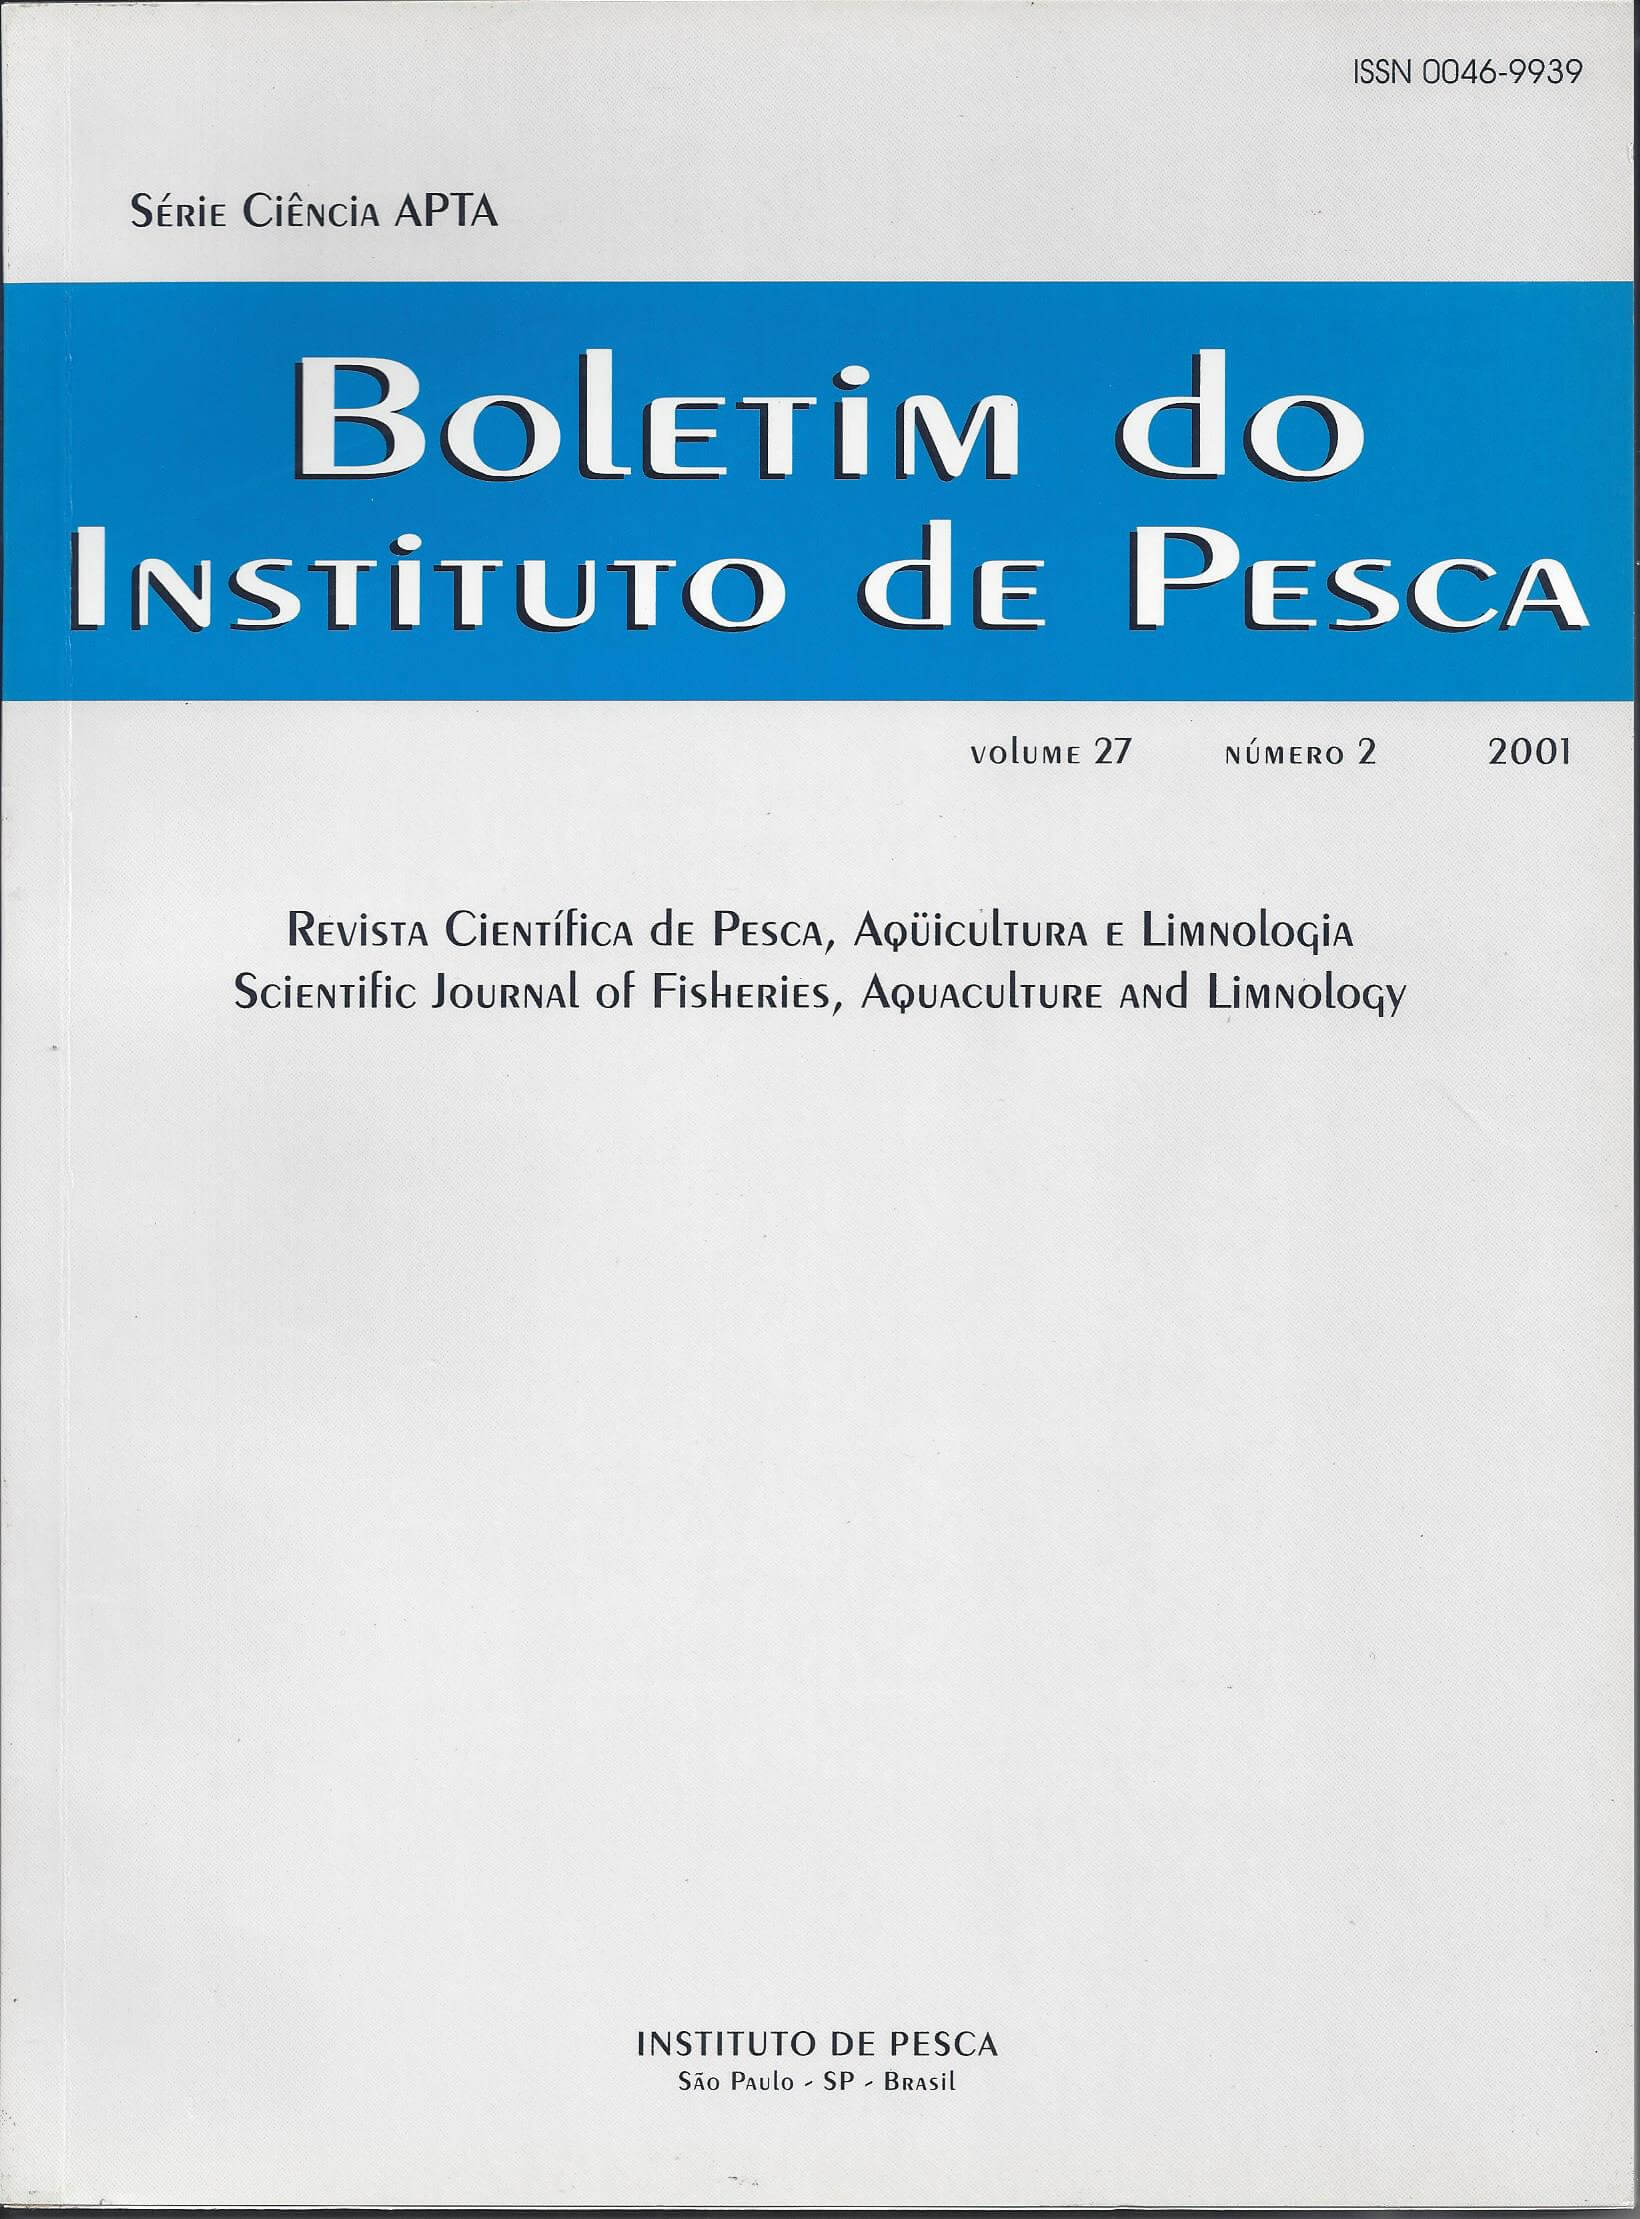 					Visualizar v. 27 n. 2 (2001): BOLETIM DO INSTITUTO DE PESCA
				